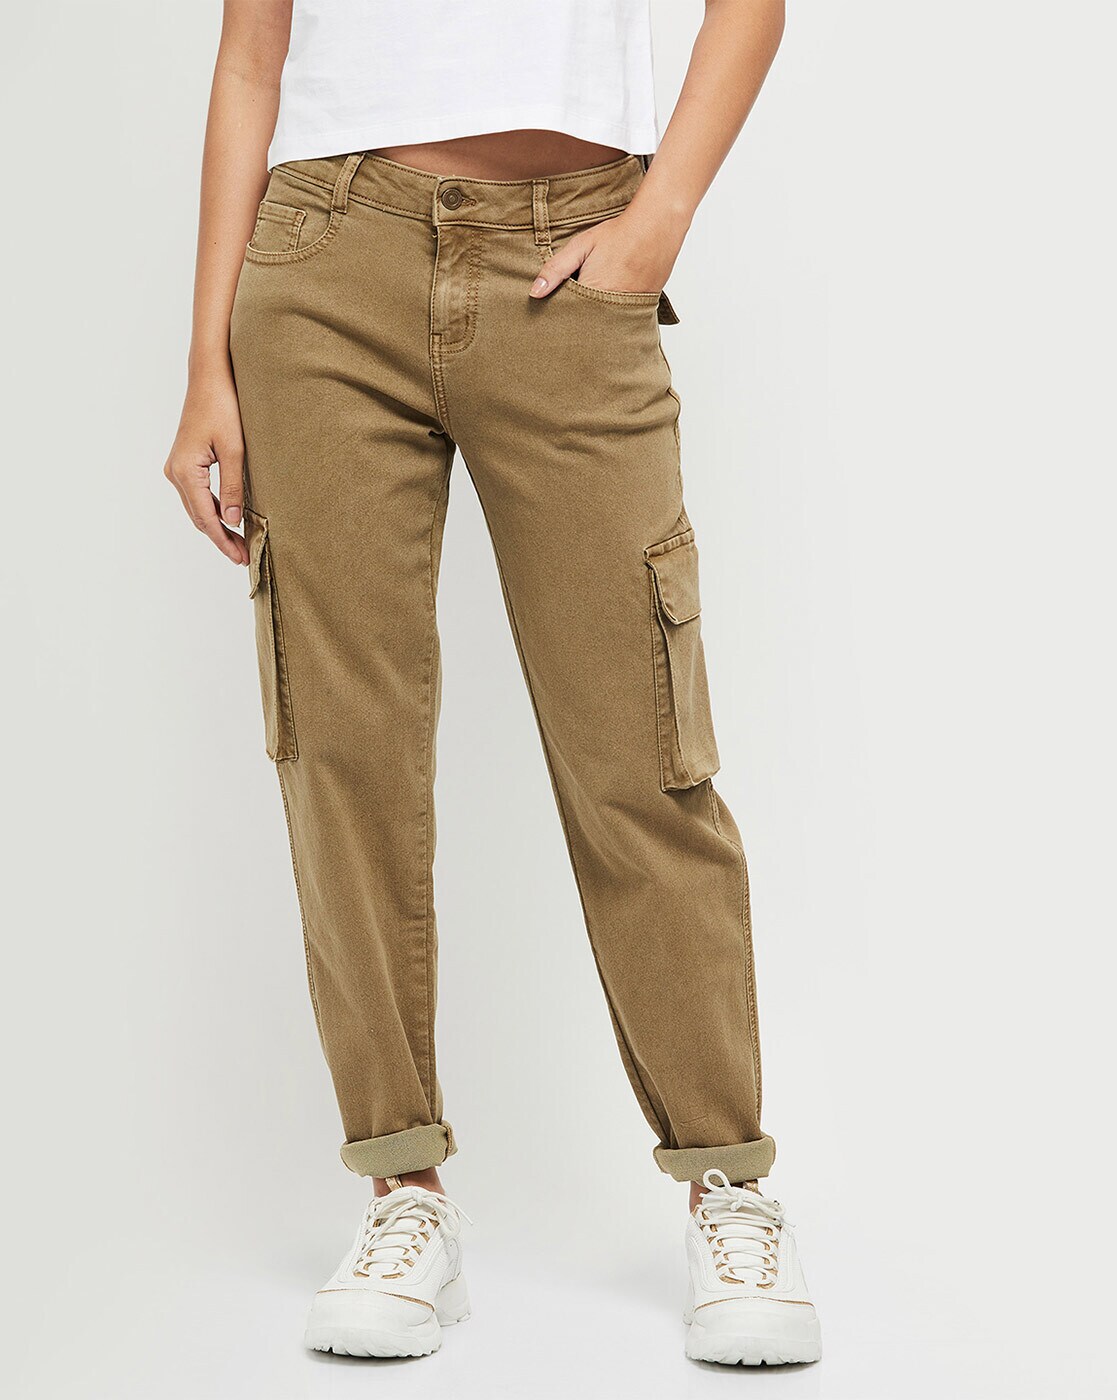 khaki-pants | Khaki pants outfit women, Chino pants women, Khaki pants women